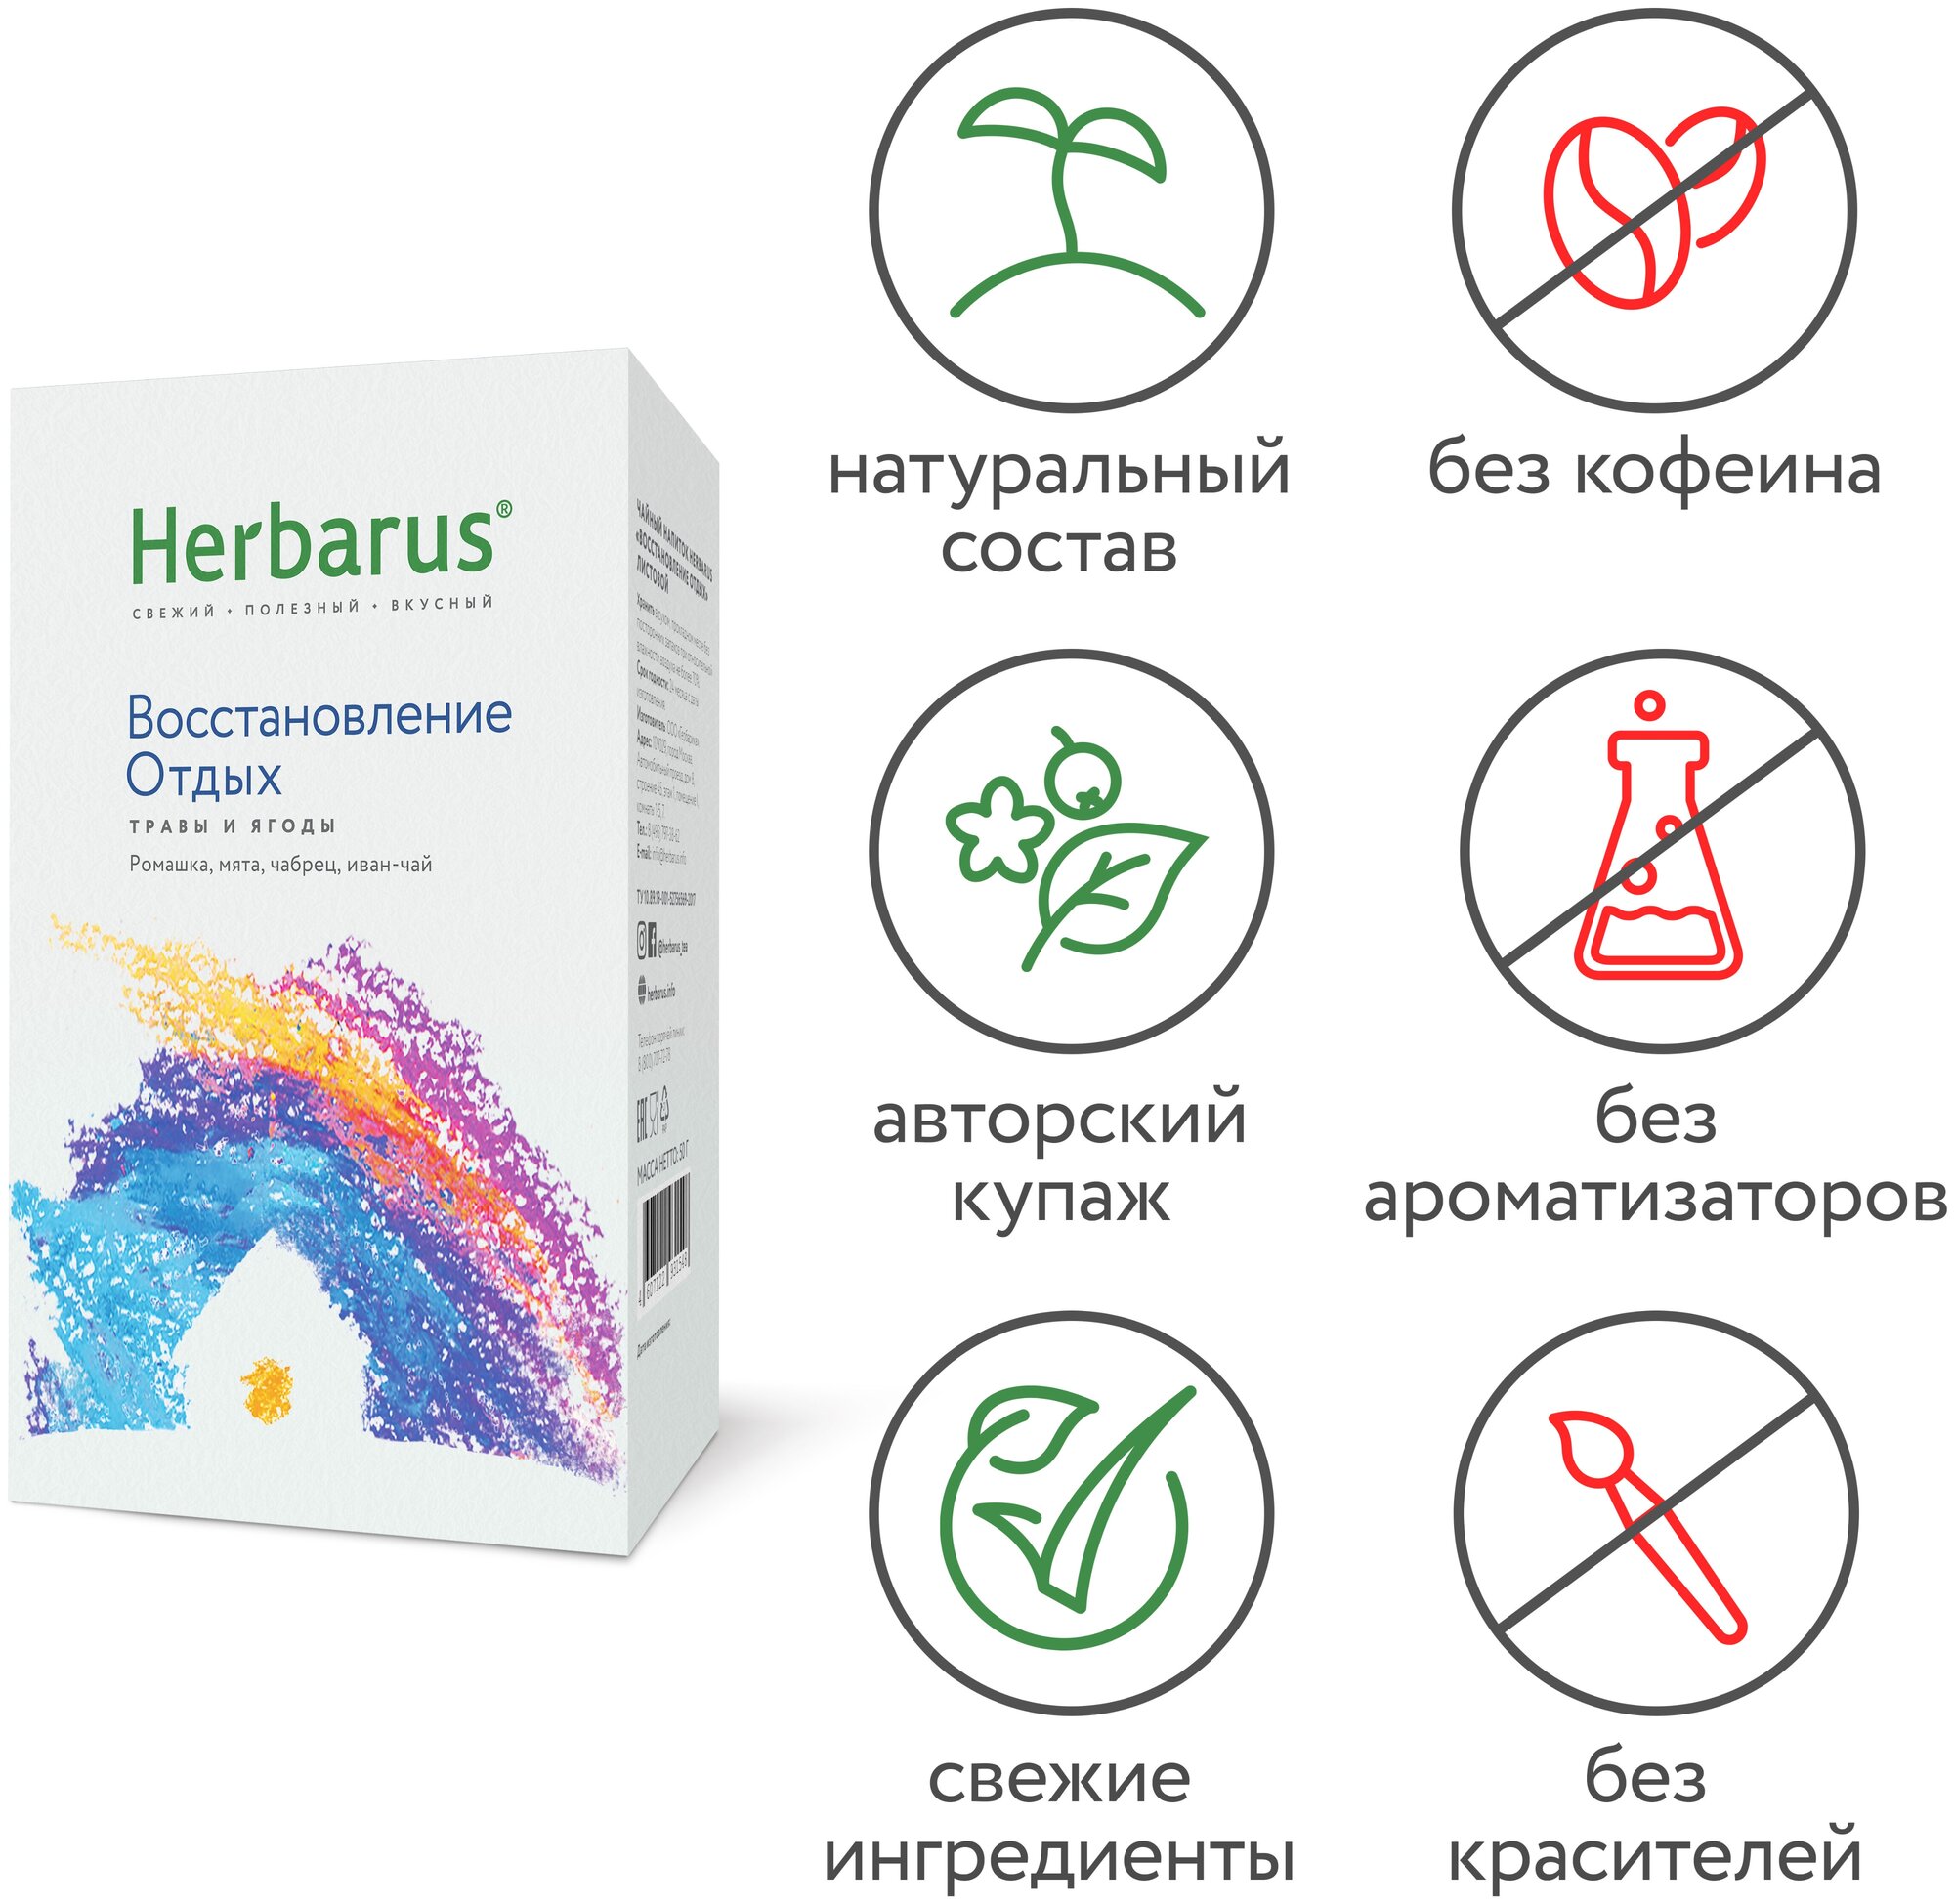 Чайный напиток Herbarus, Восстановление отдых, 50 гр. - фотография № 3